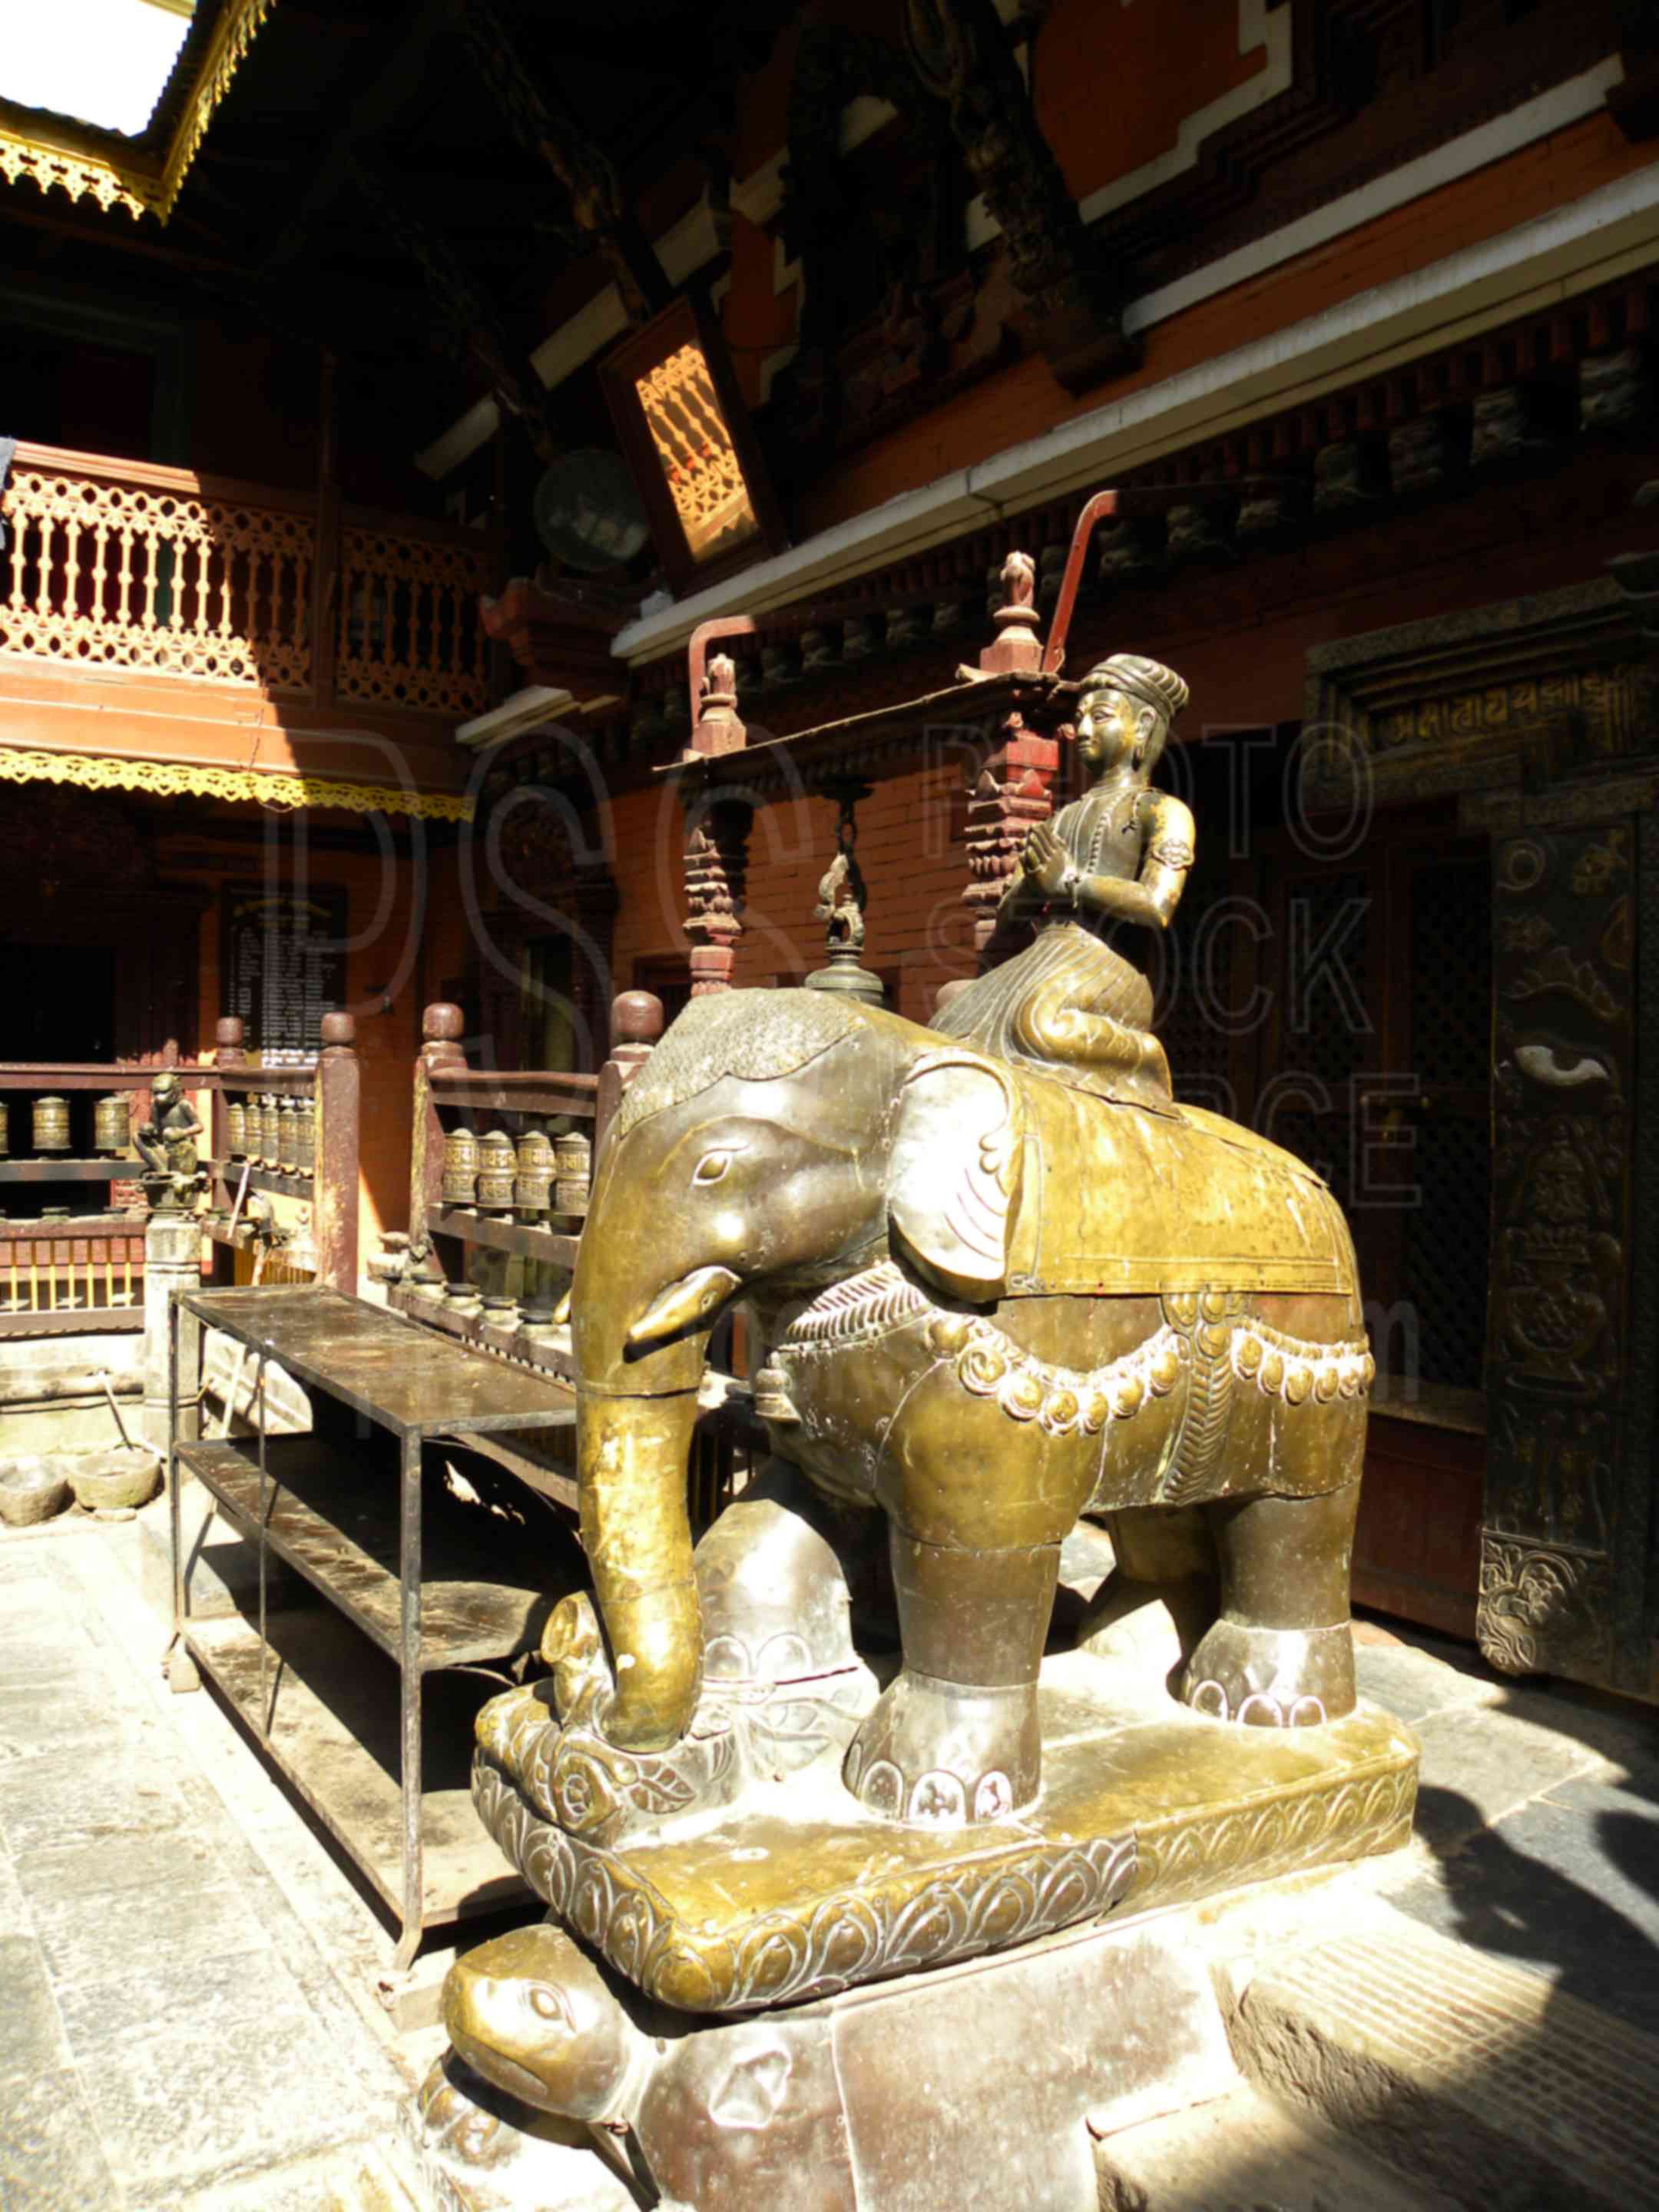 Golden Temple Statue,temple,hiranya varna mahavihar,kwa bahal,suvarna mahavihara,courtyard,statue,elephant,architecture,temples